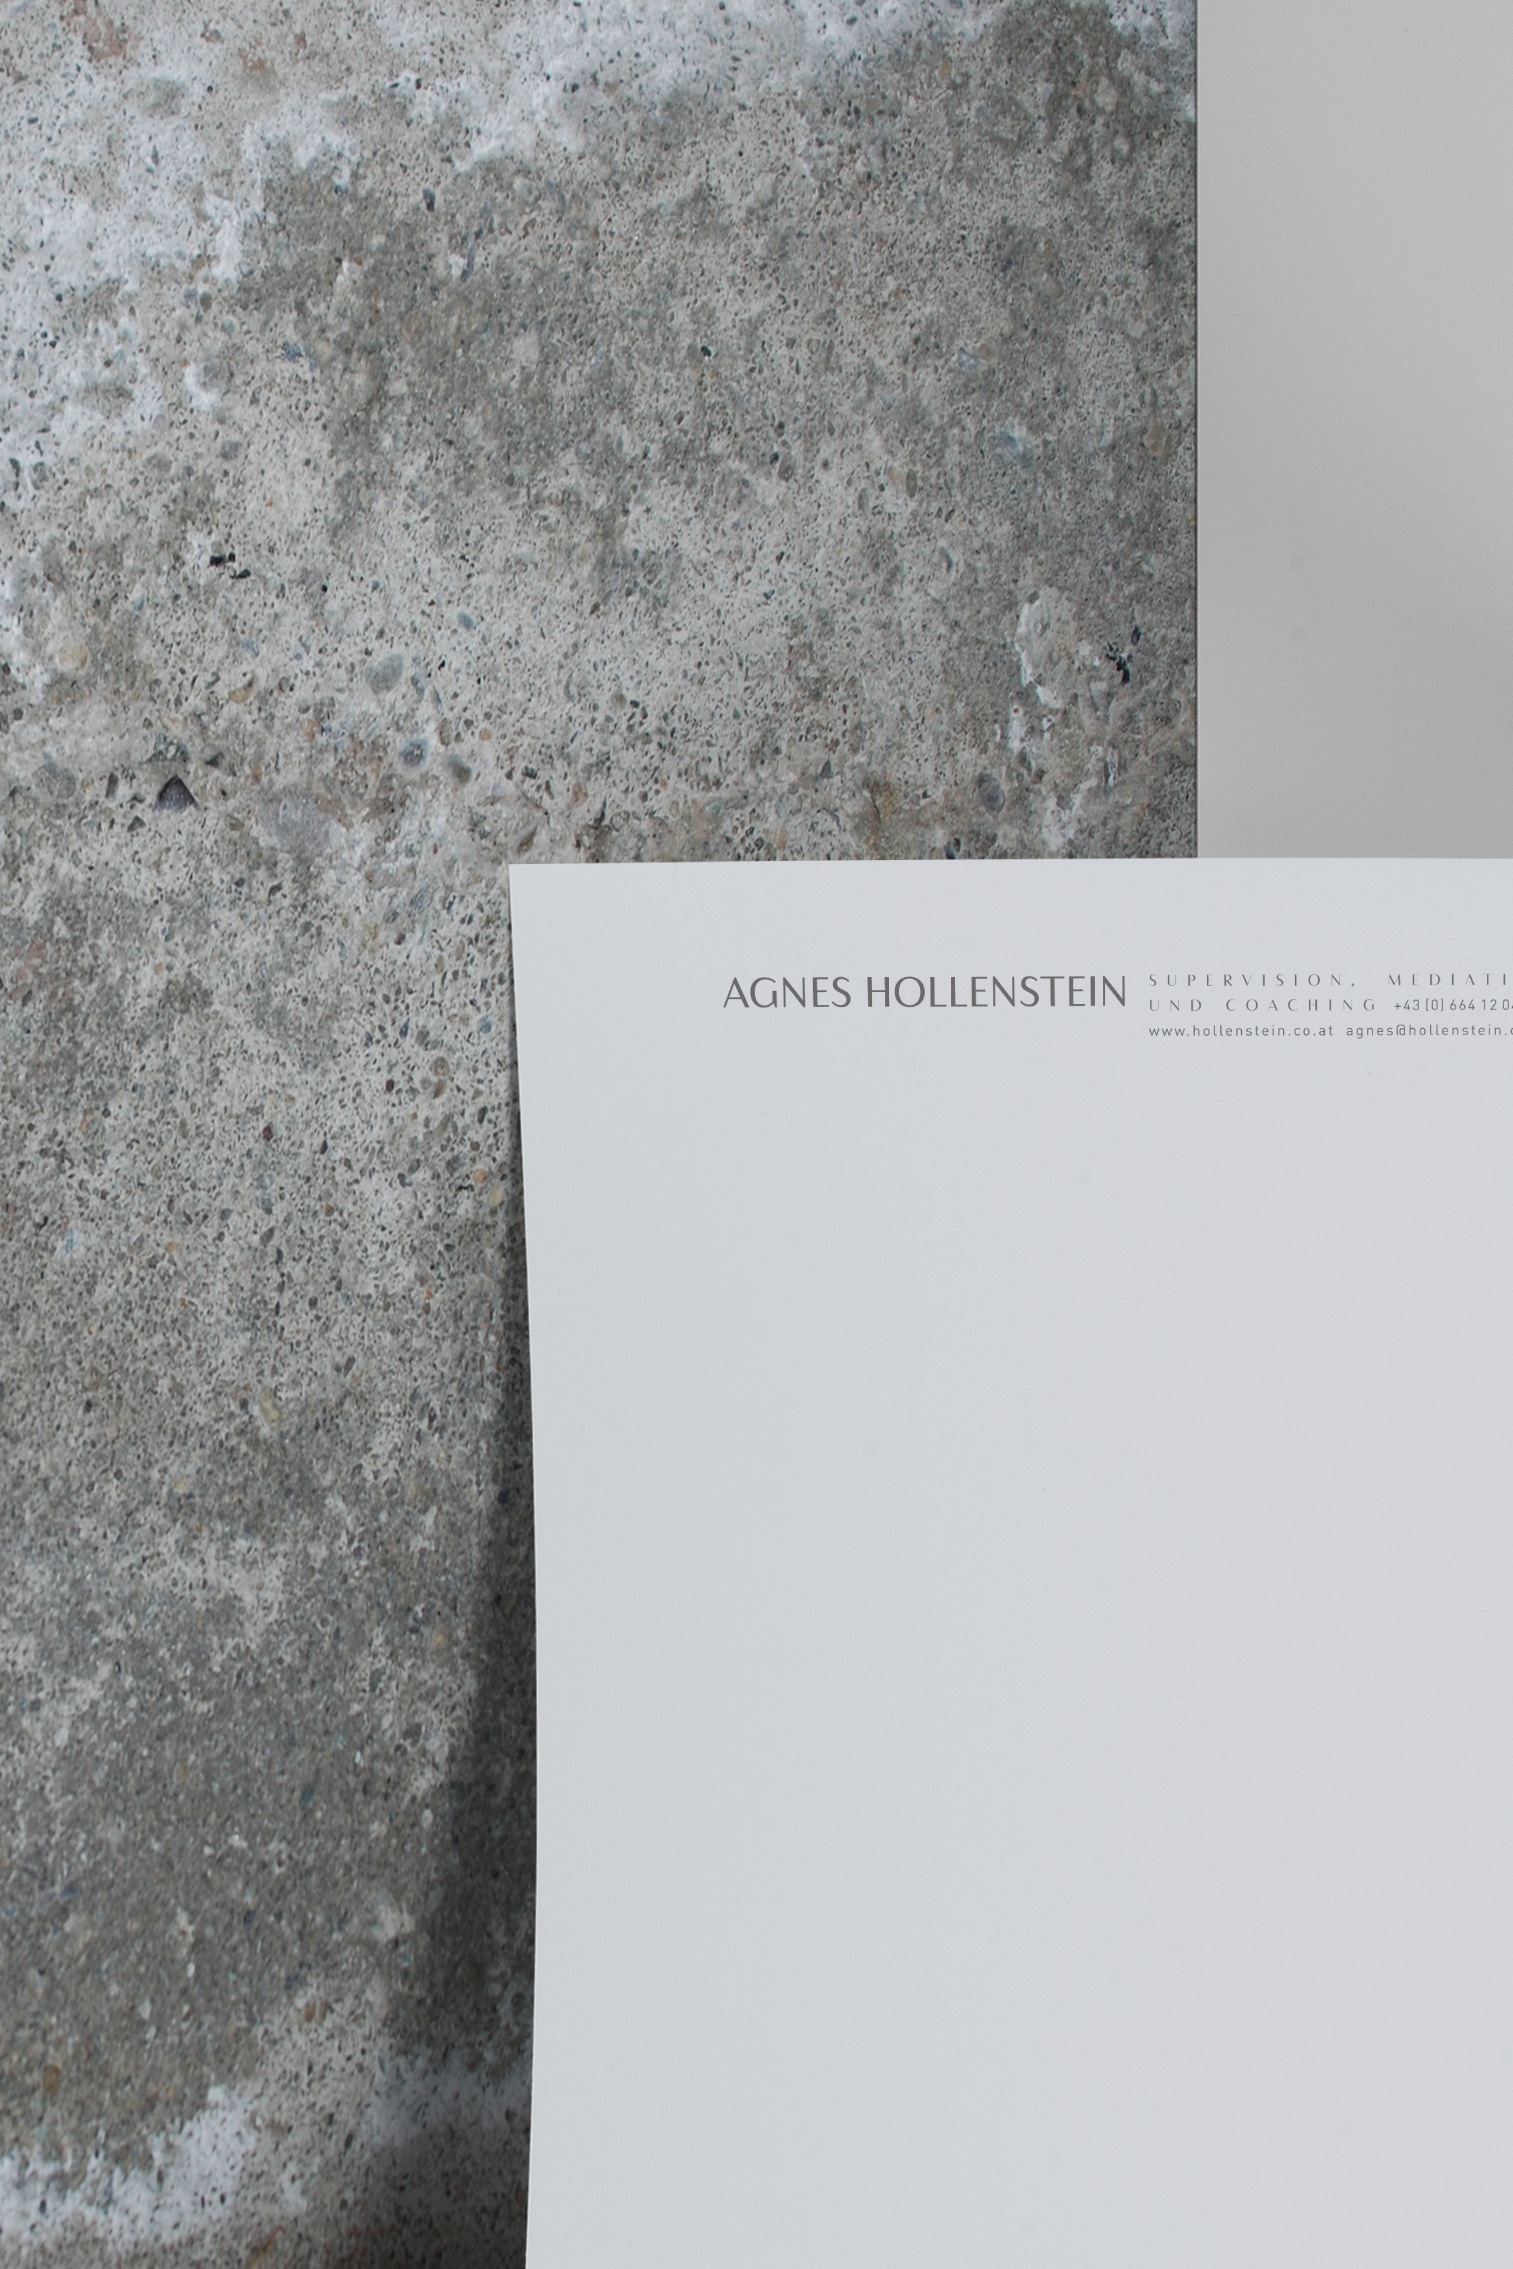 Briefpapier von Agnes Hollenstein. Supervison, Mediation und Coaching. Grafikdesign von Simone Angerer.